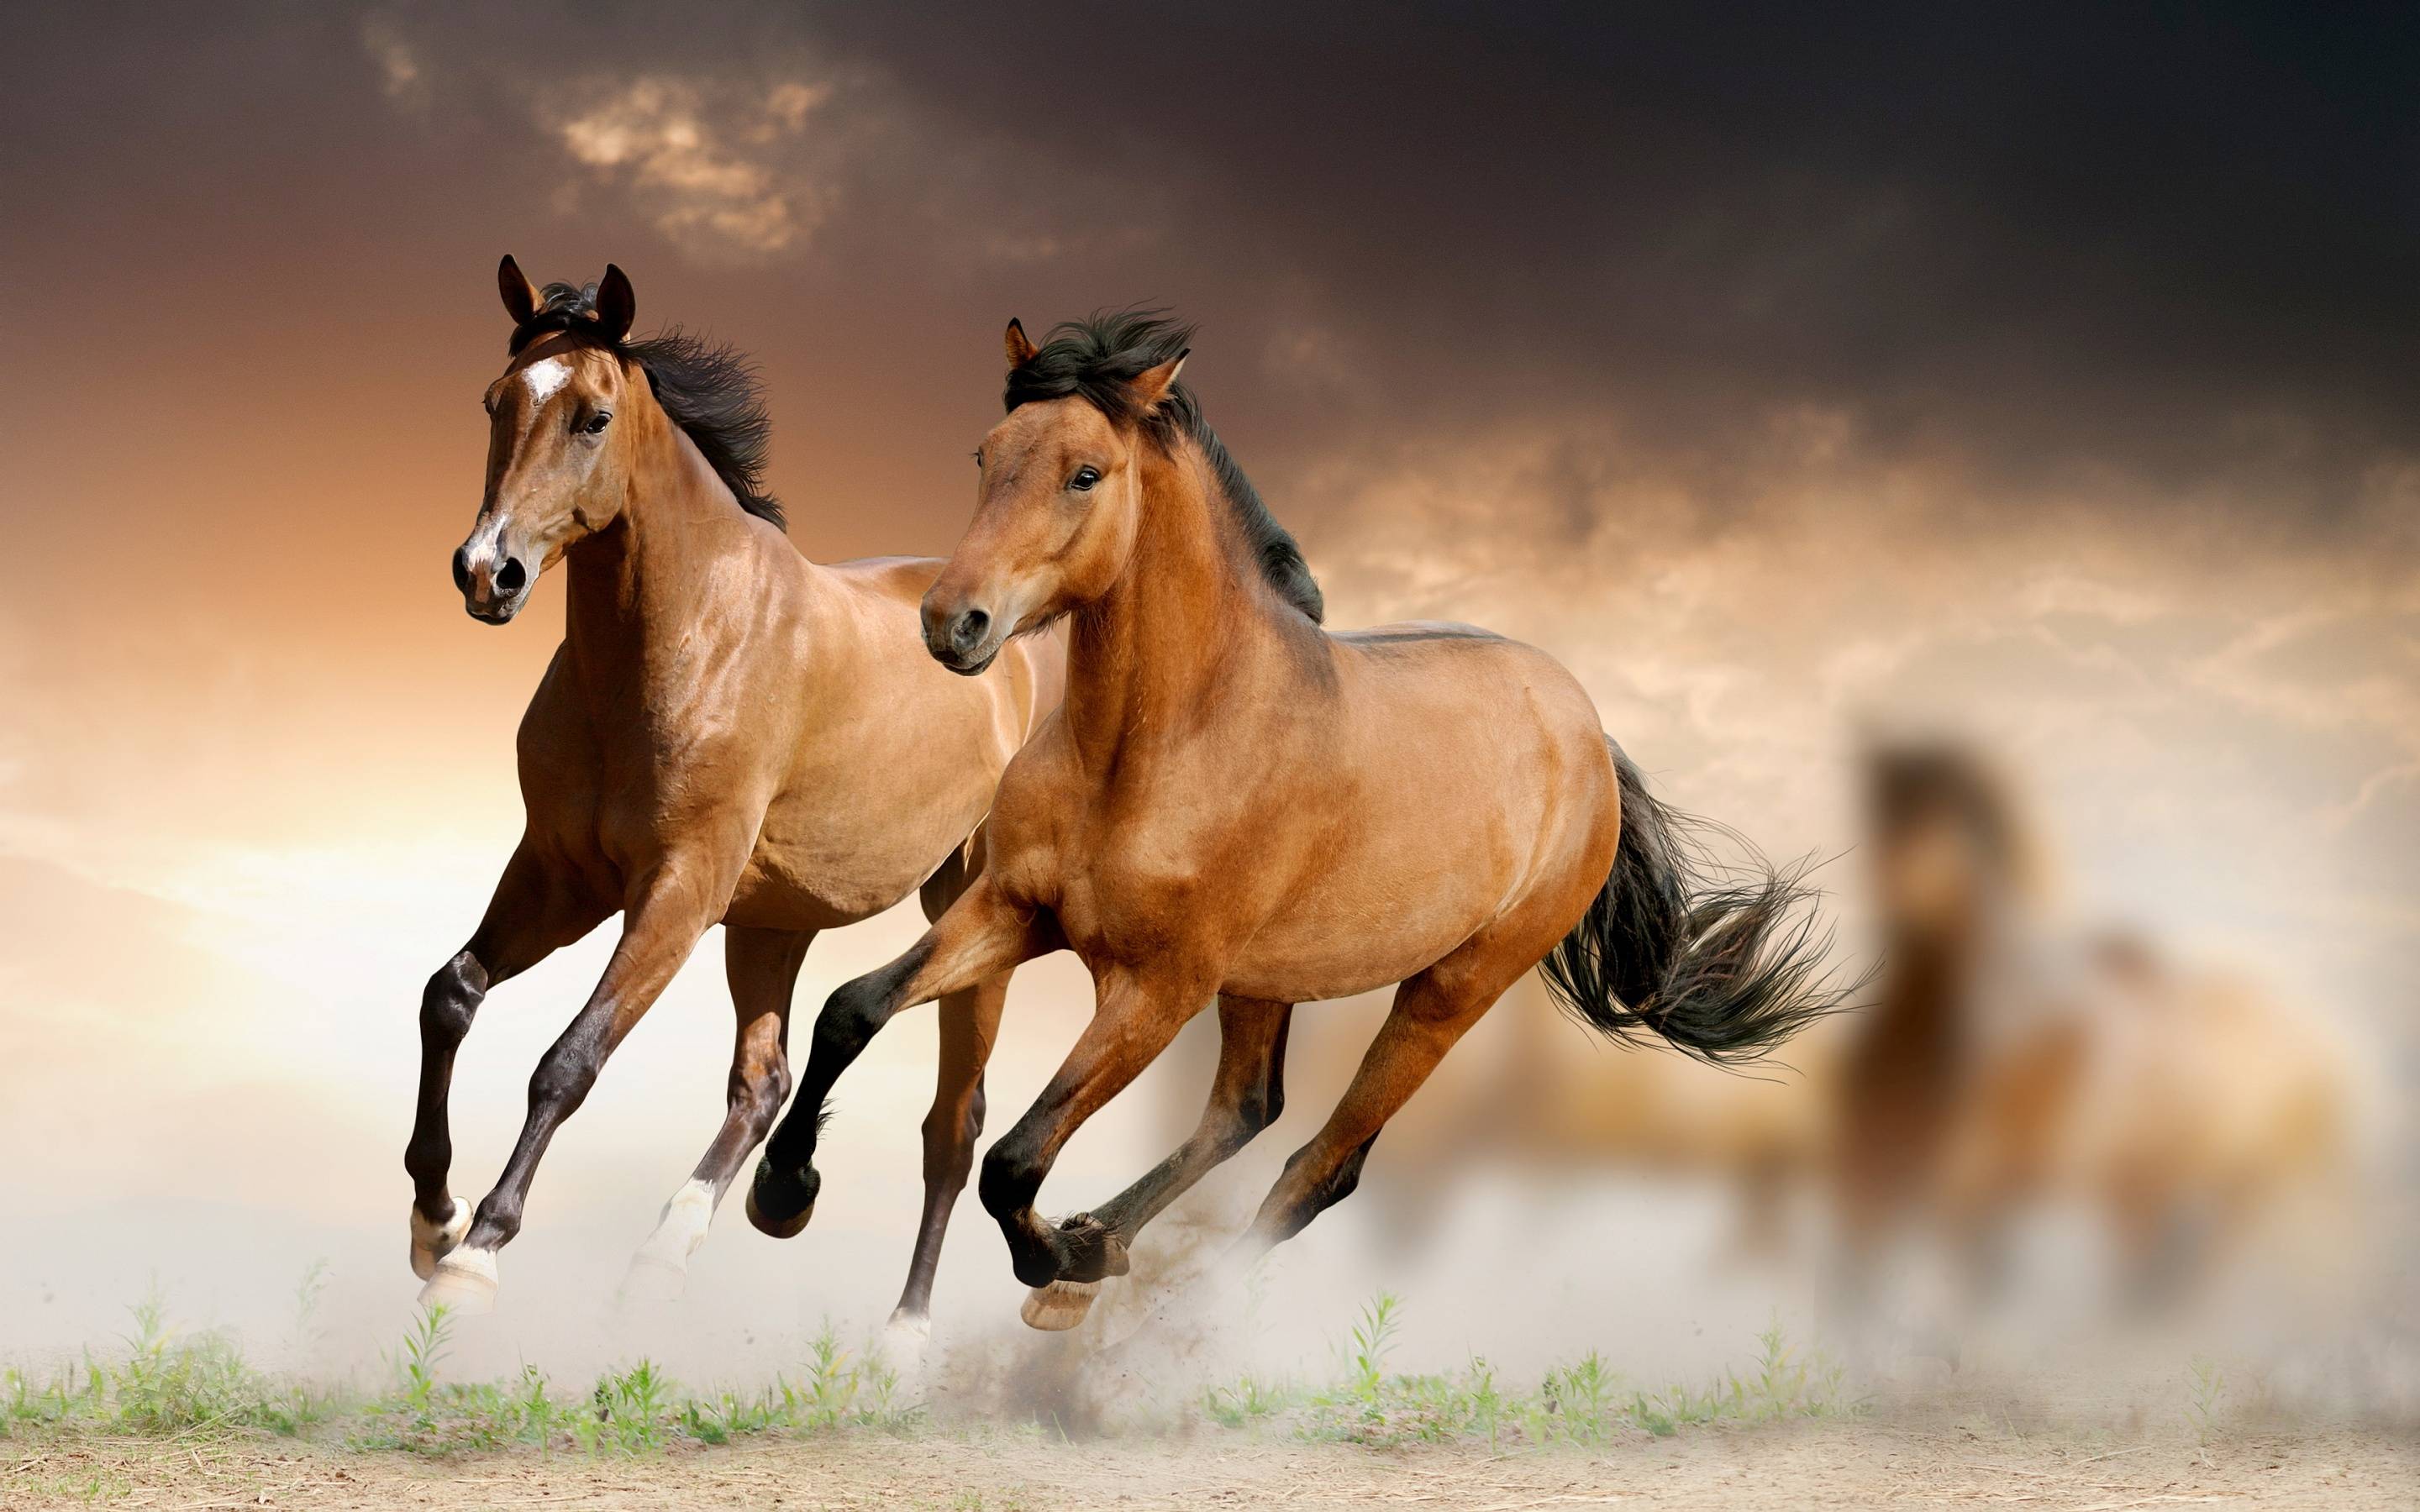 Running Horse HD Wallpaper Download. High Quality Wallpaper